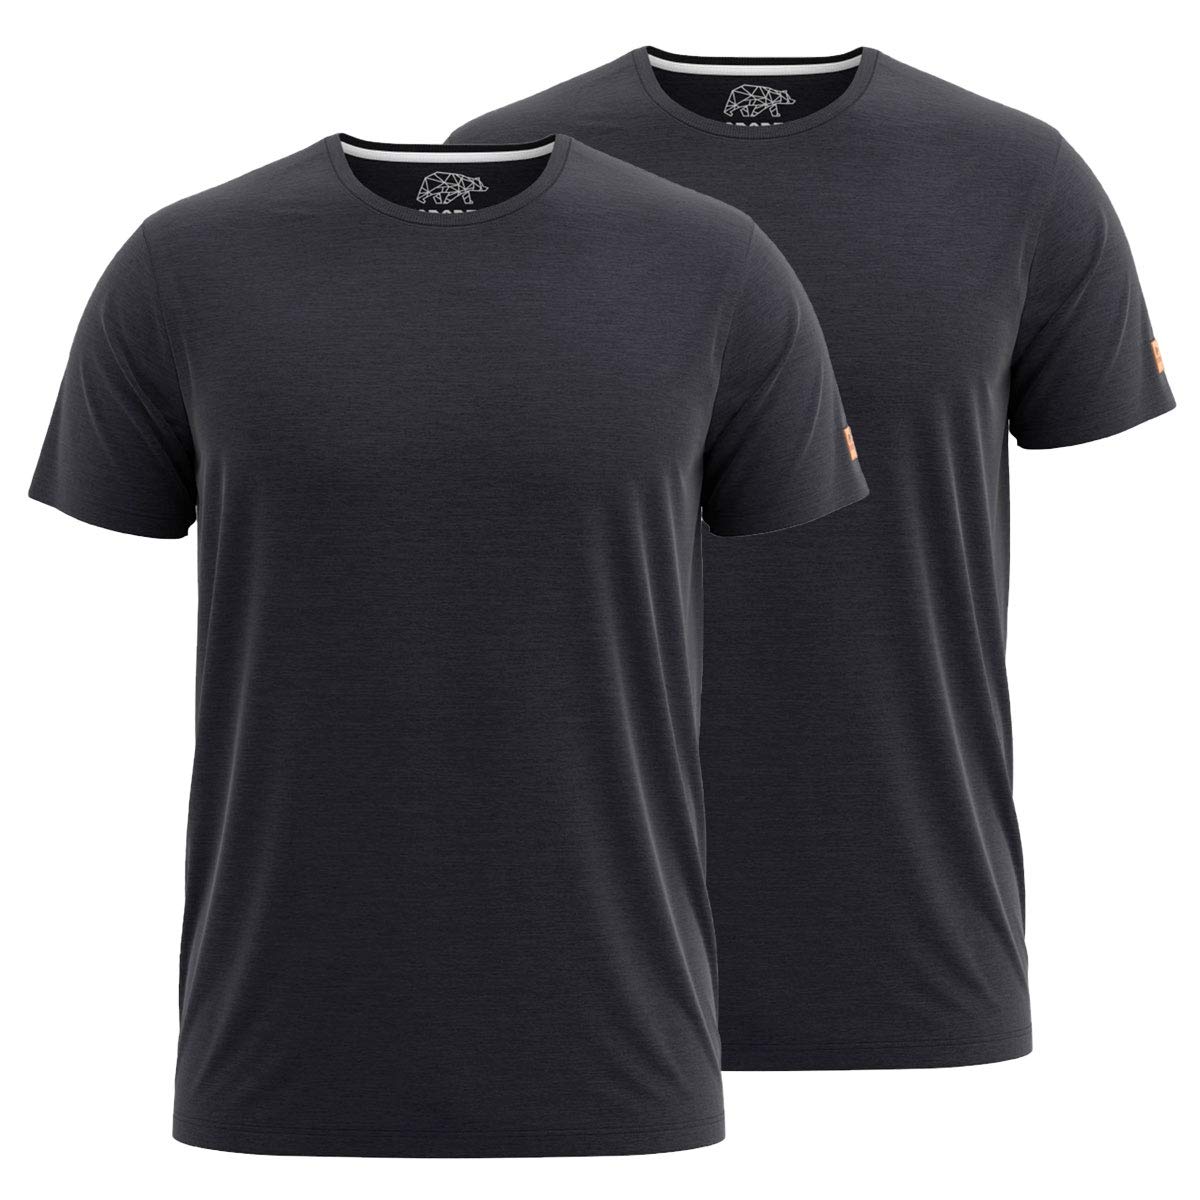 FORSBERG T-Shirt Doppelpack zum Sparpreis einfarbig Rundhals hochwertig robust bequem guter Schnitt, Farbe:schwarz, Größe:S